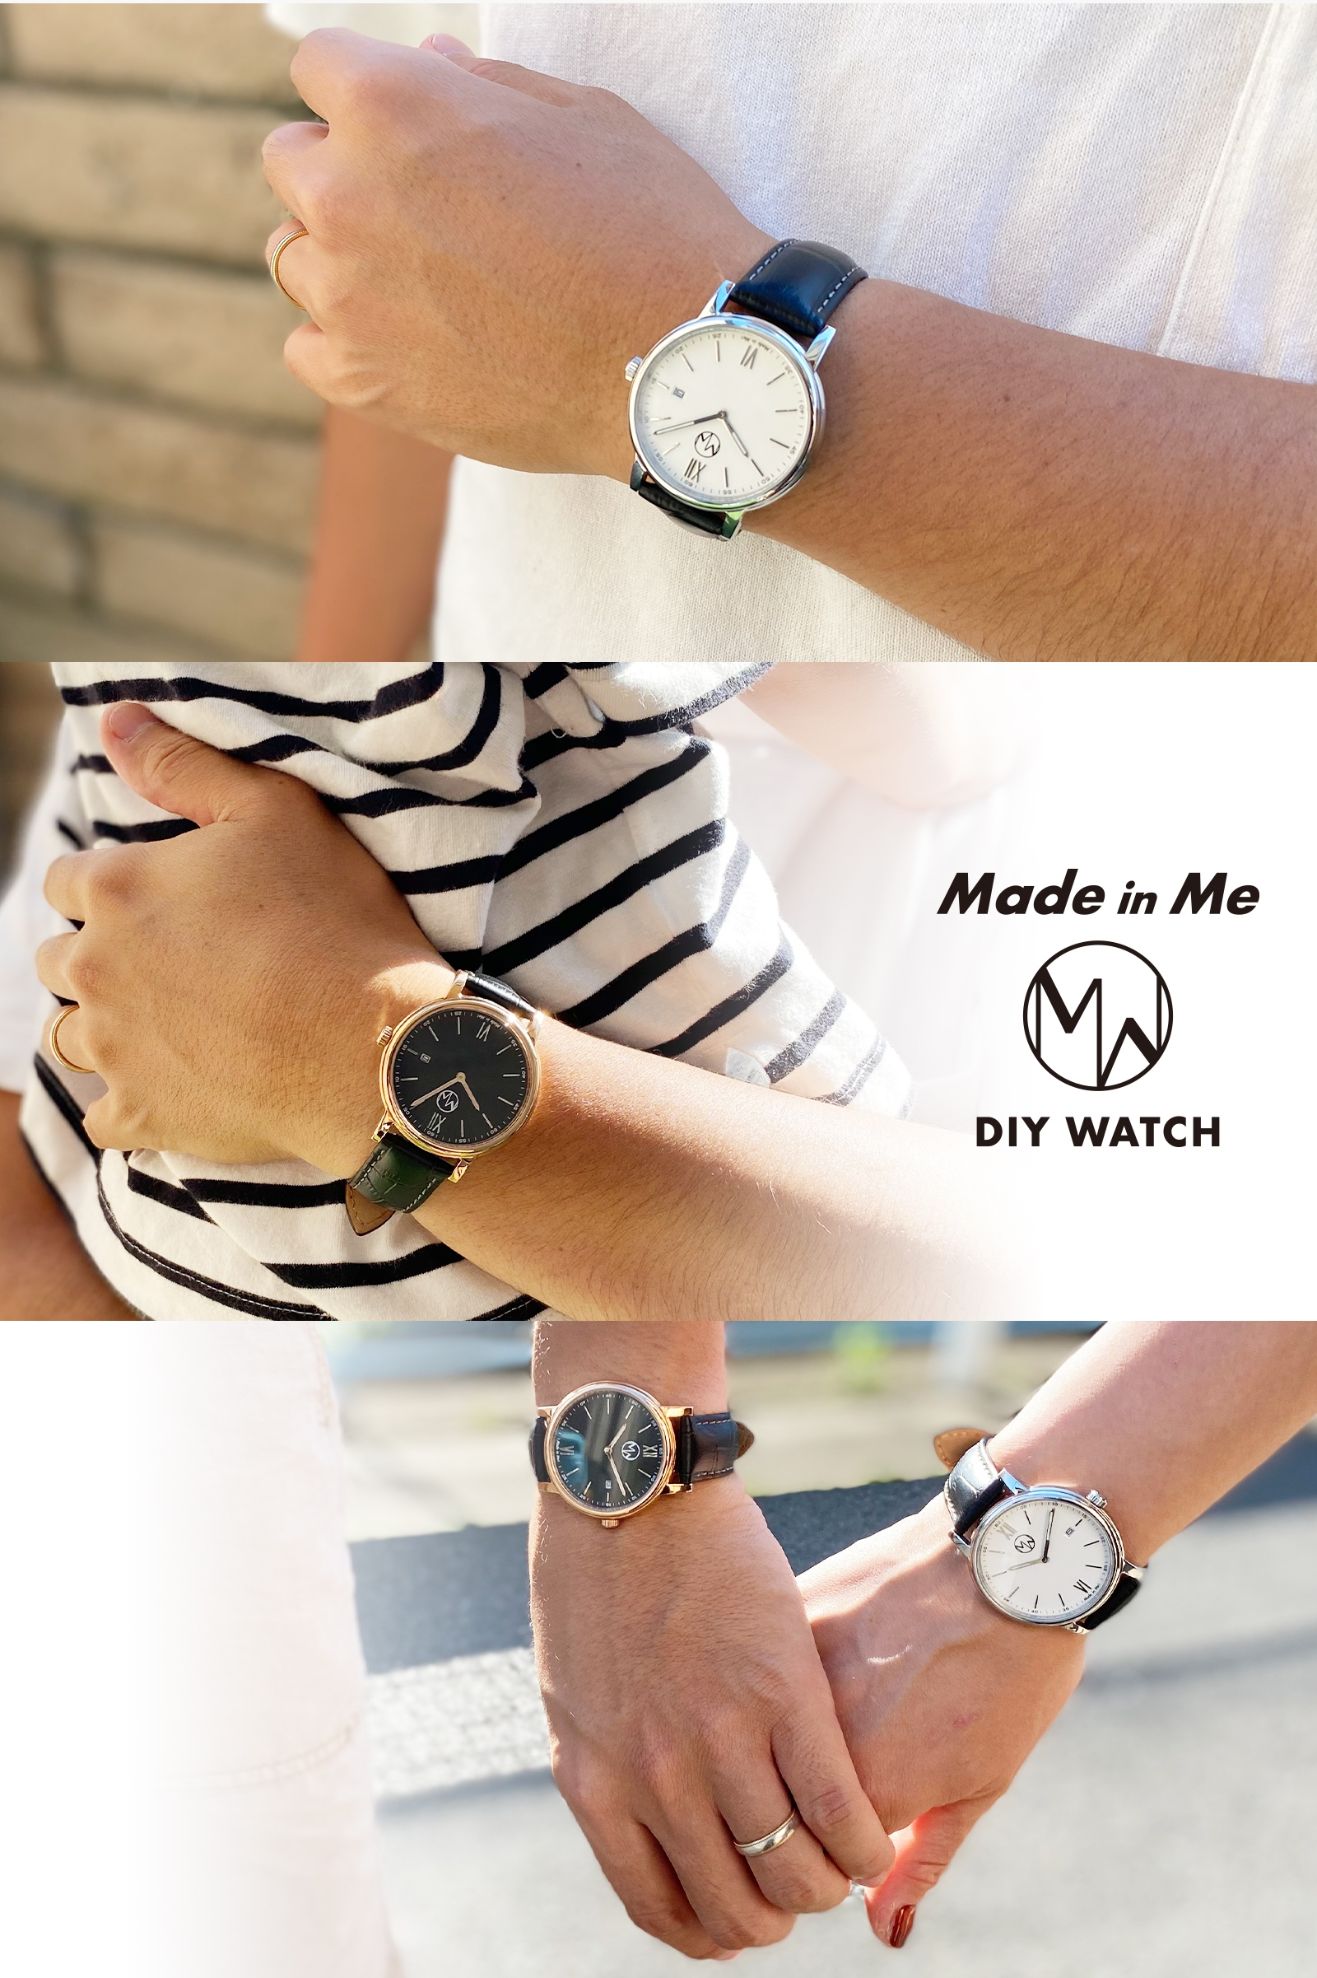 パーツを選んで創る腕時計DIY WATCH【Made in Me】 | Glimpse [グリンプス]